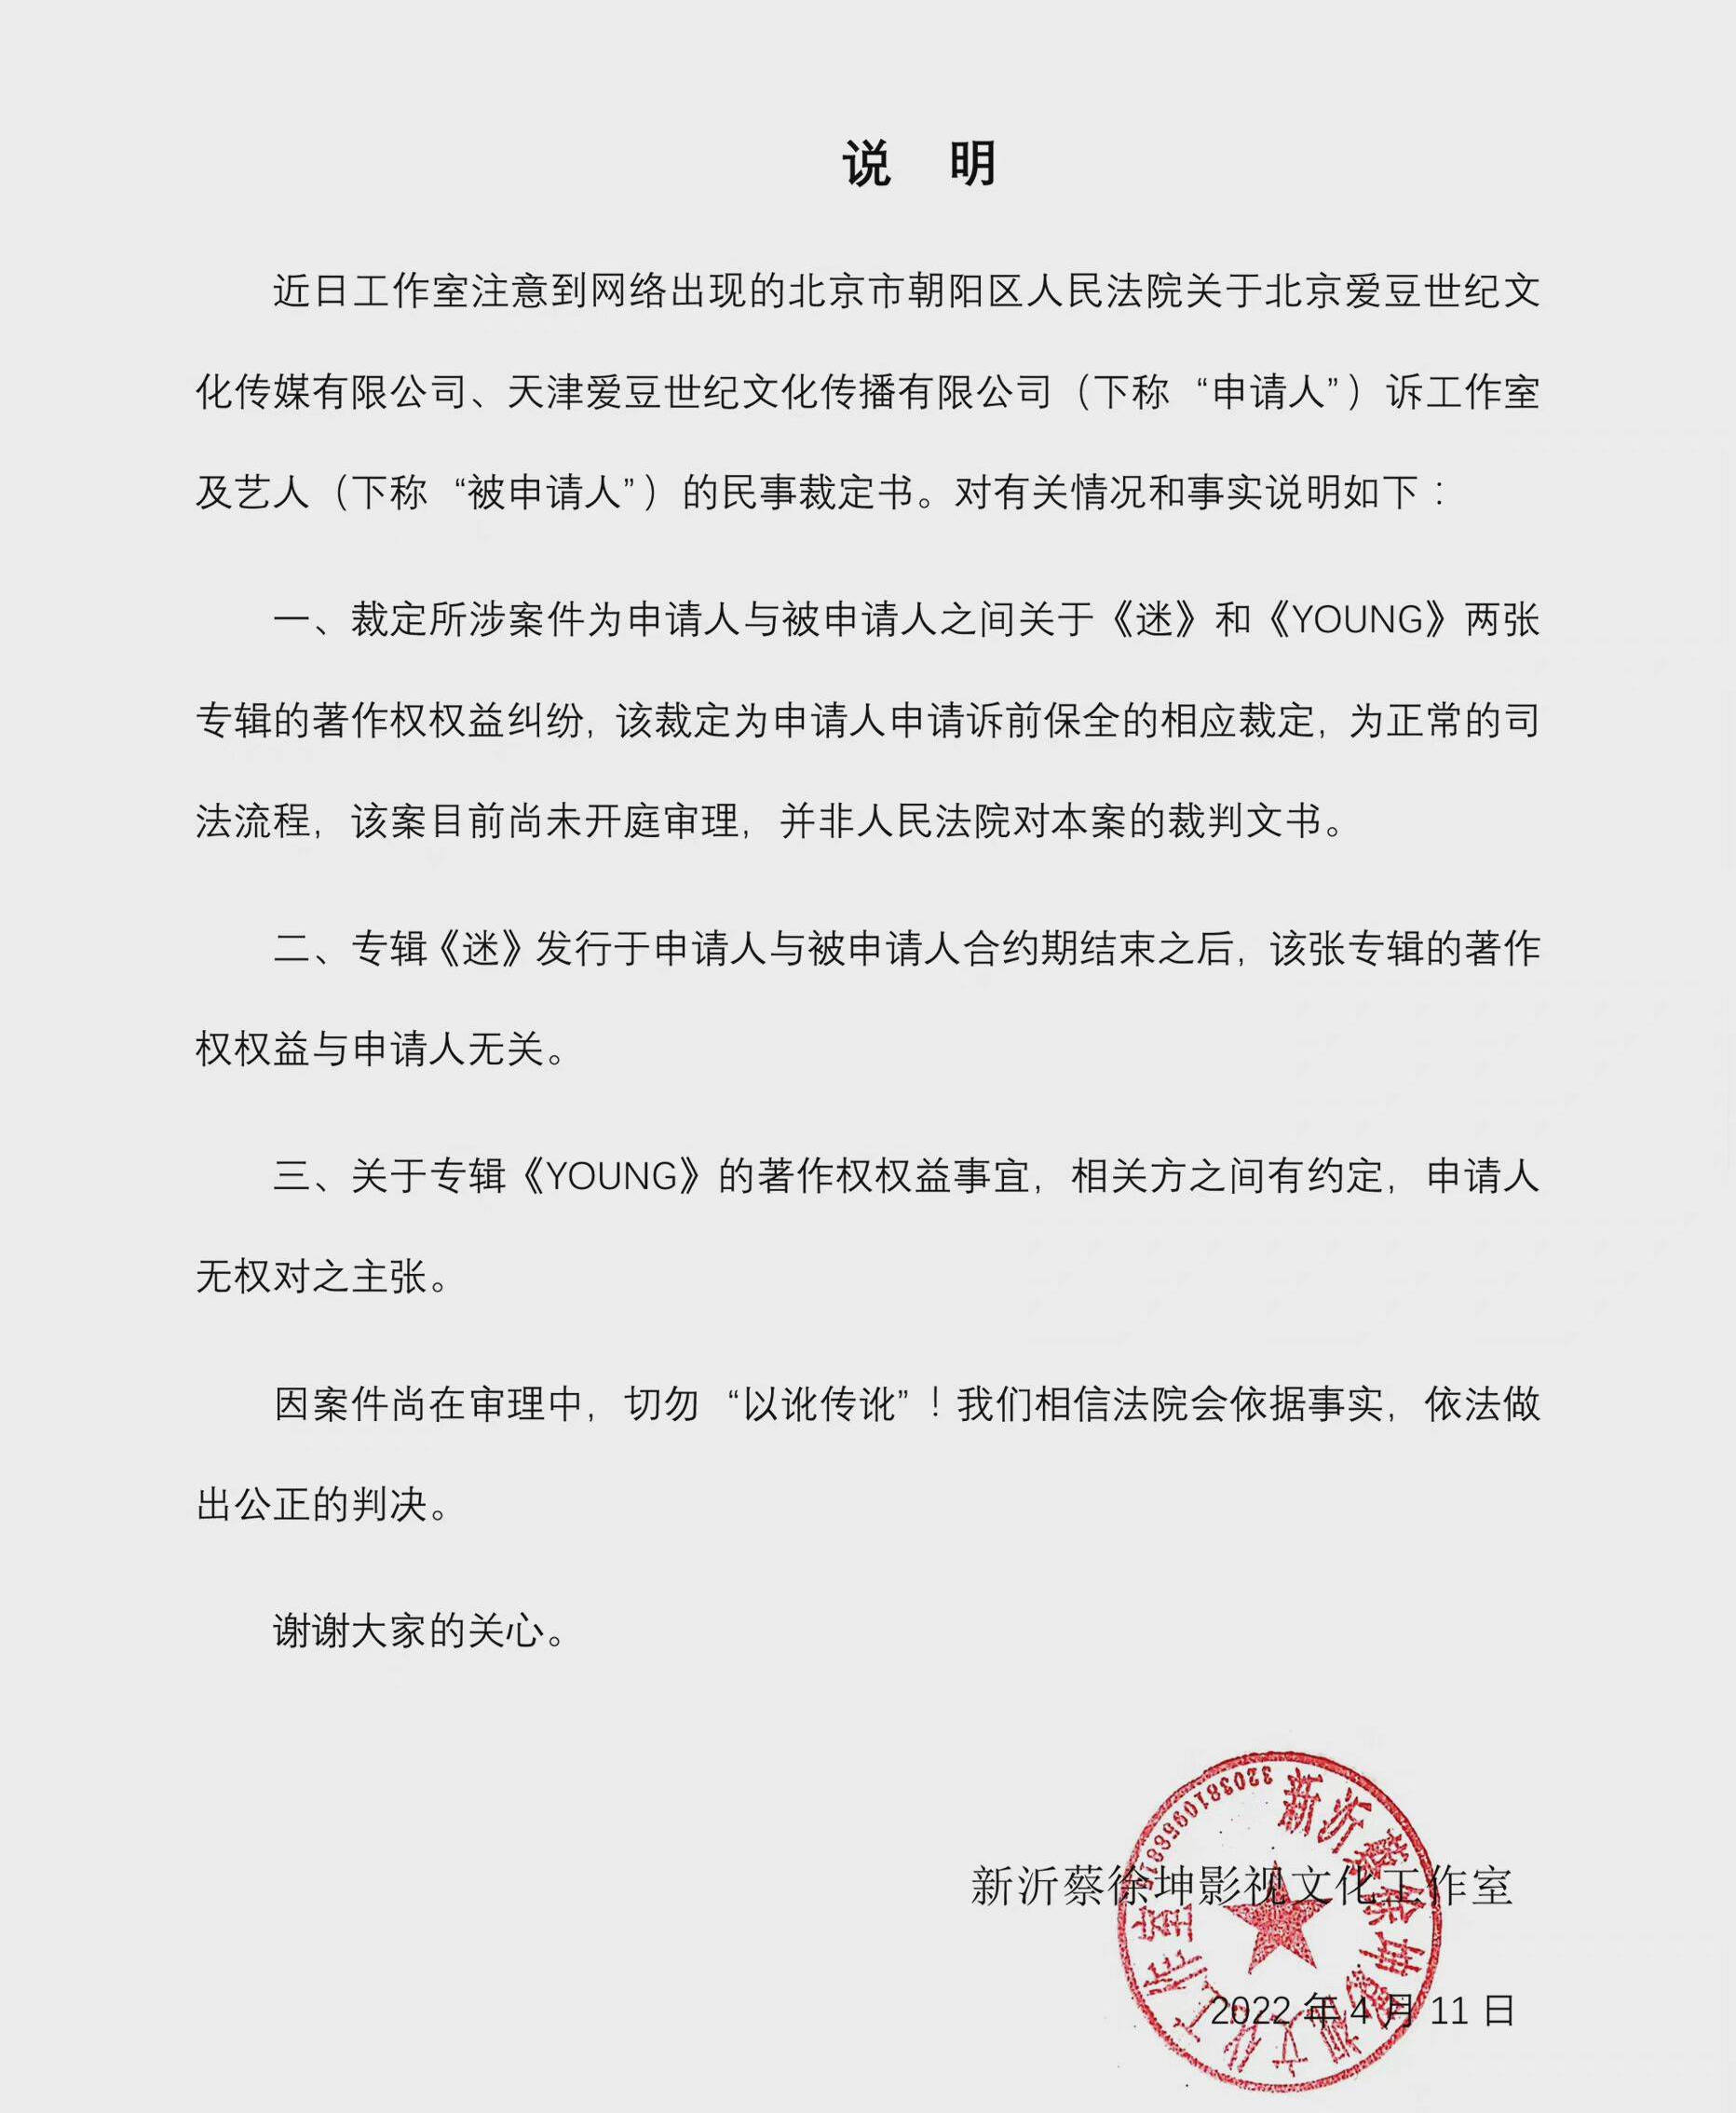 蔡徐坤工作室发文回应与爱豆世纪纠纷 尚未开庭审理